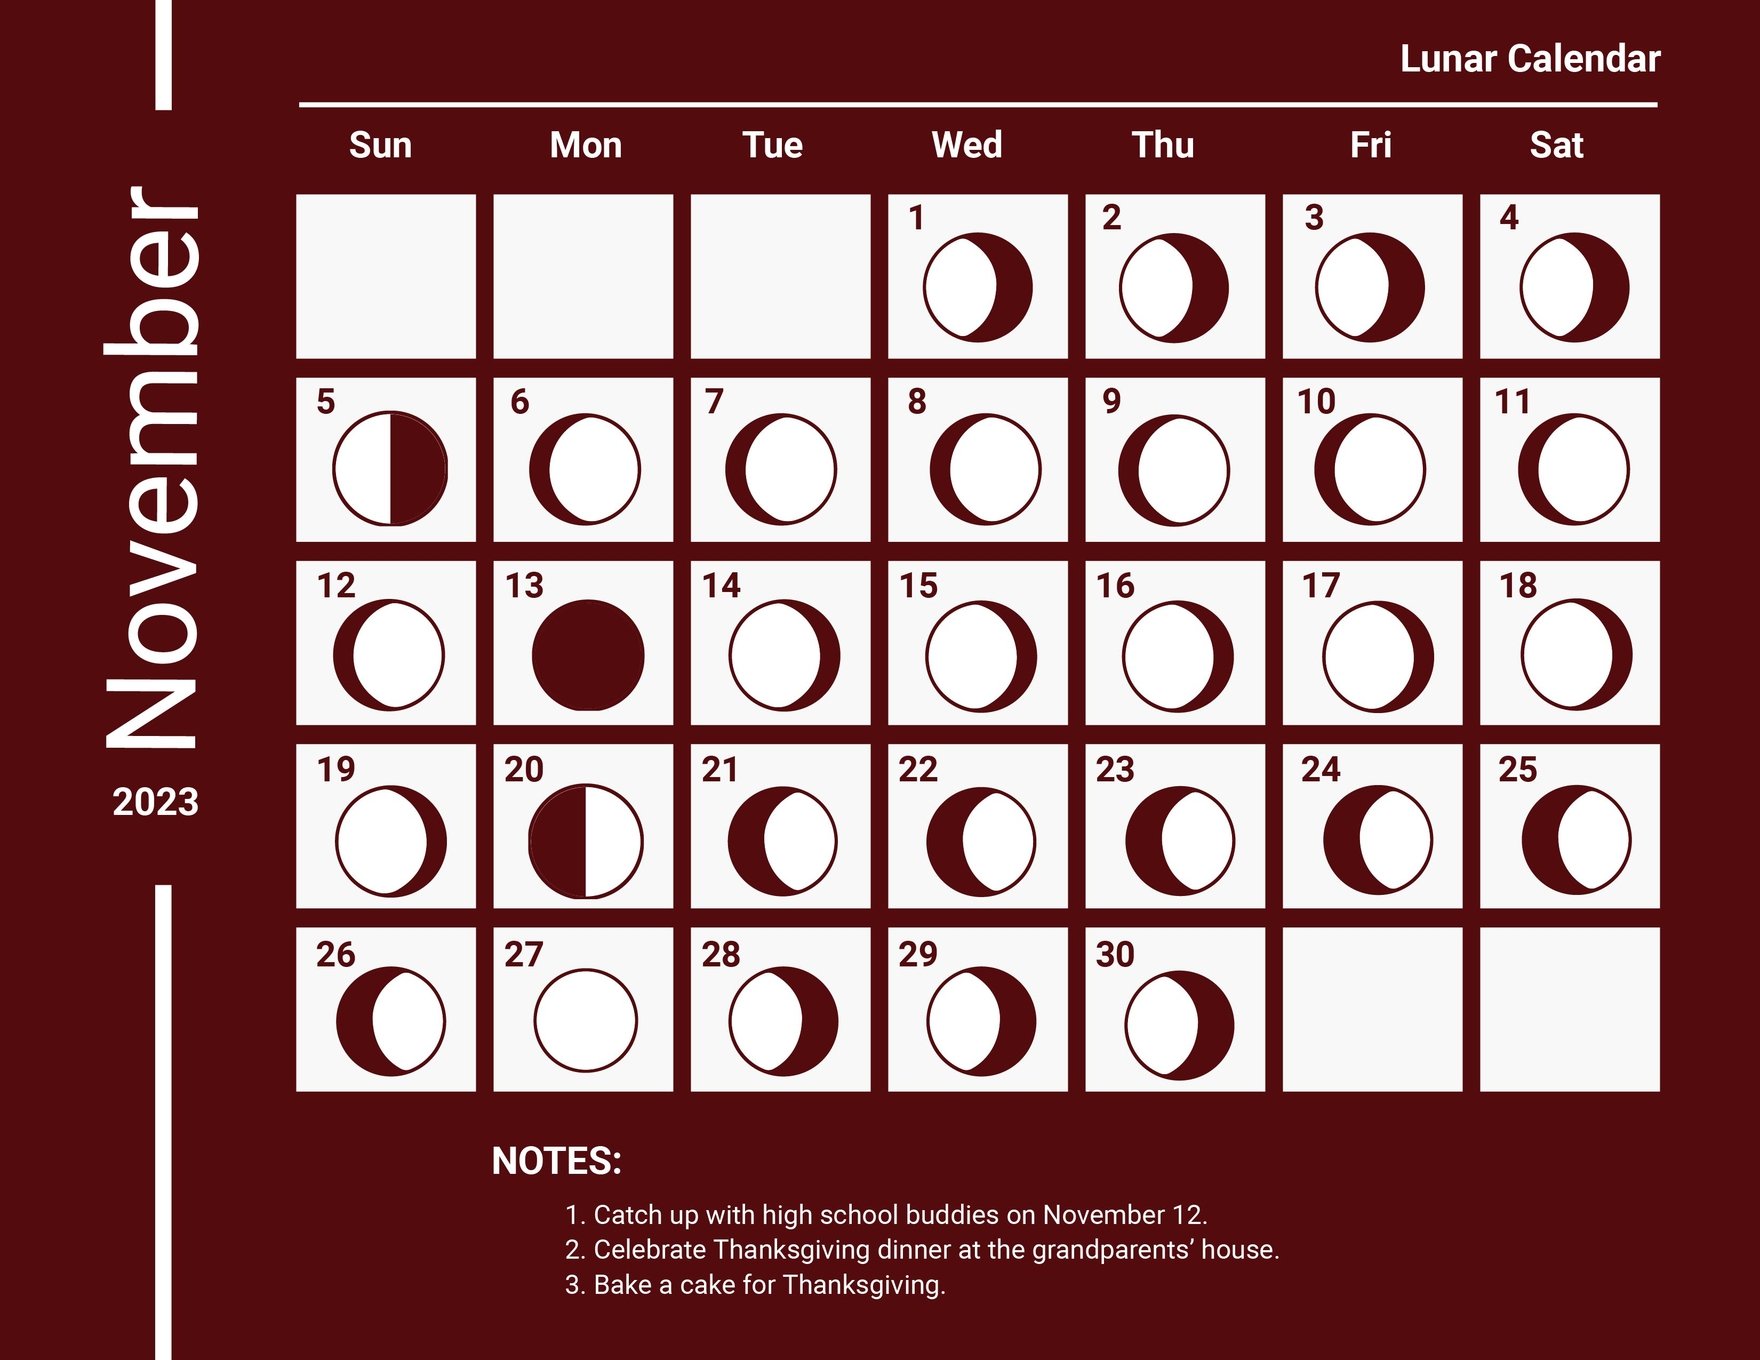 Lunar Calendar November 2023 in Word, Google Docs, Excel, Google Sheets, Illustrator, EPS, SVG, JPG